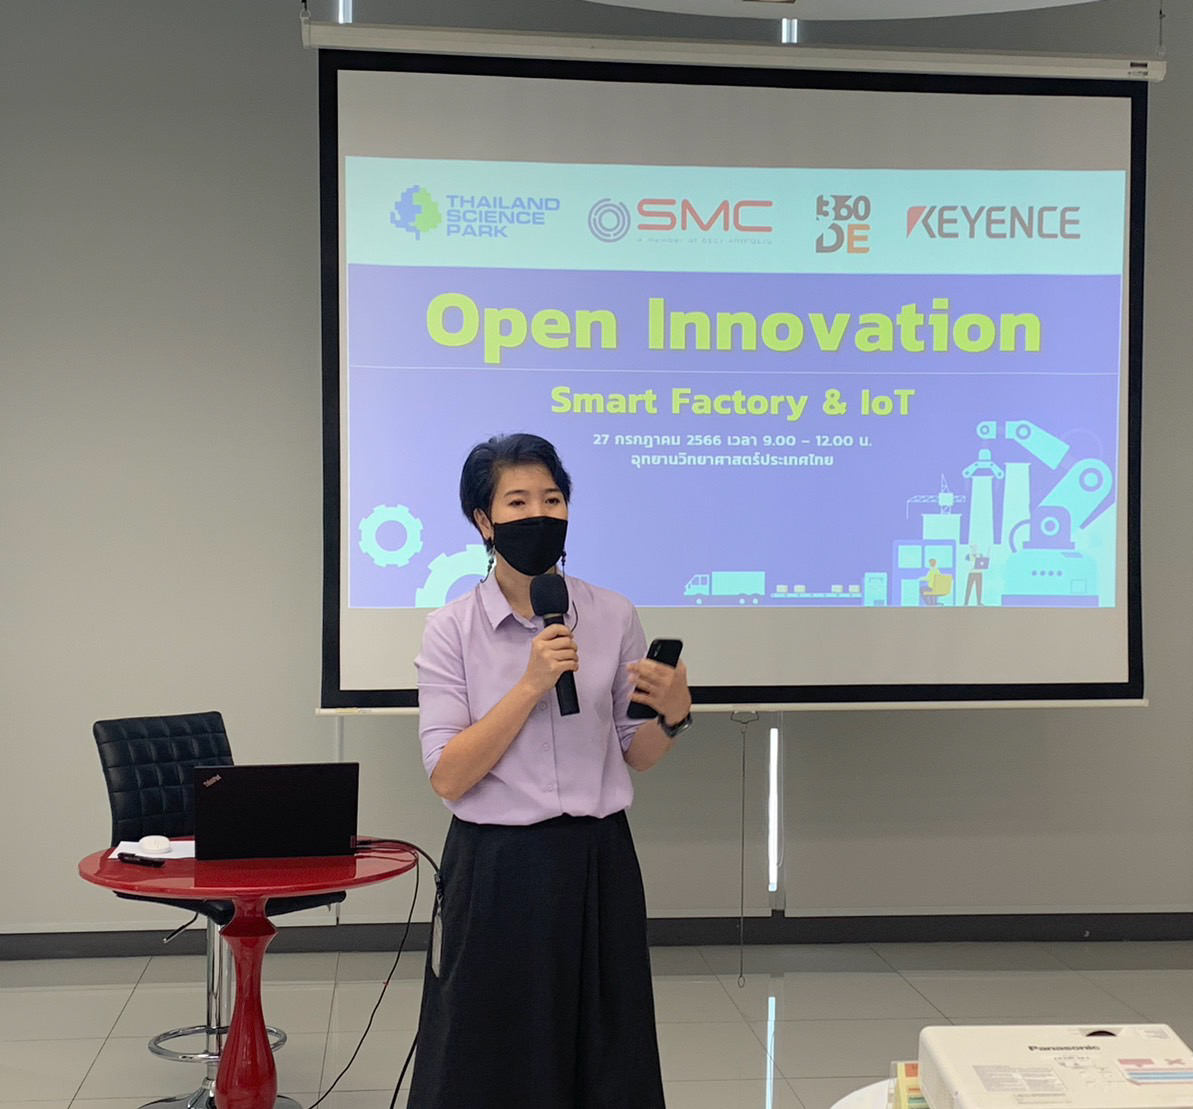 อุทยานวิทยาศาสตร์ประเทศไทย จับมือ 3 พันธมิตรจัดกิจกรรม Open Innovation : Smart Factory & IoT